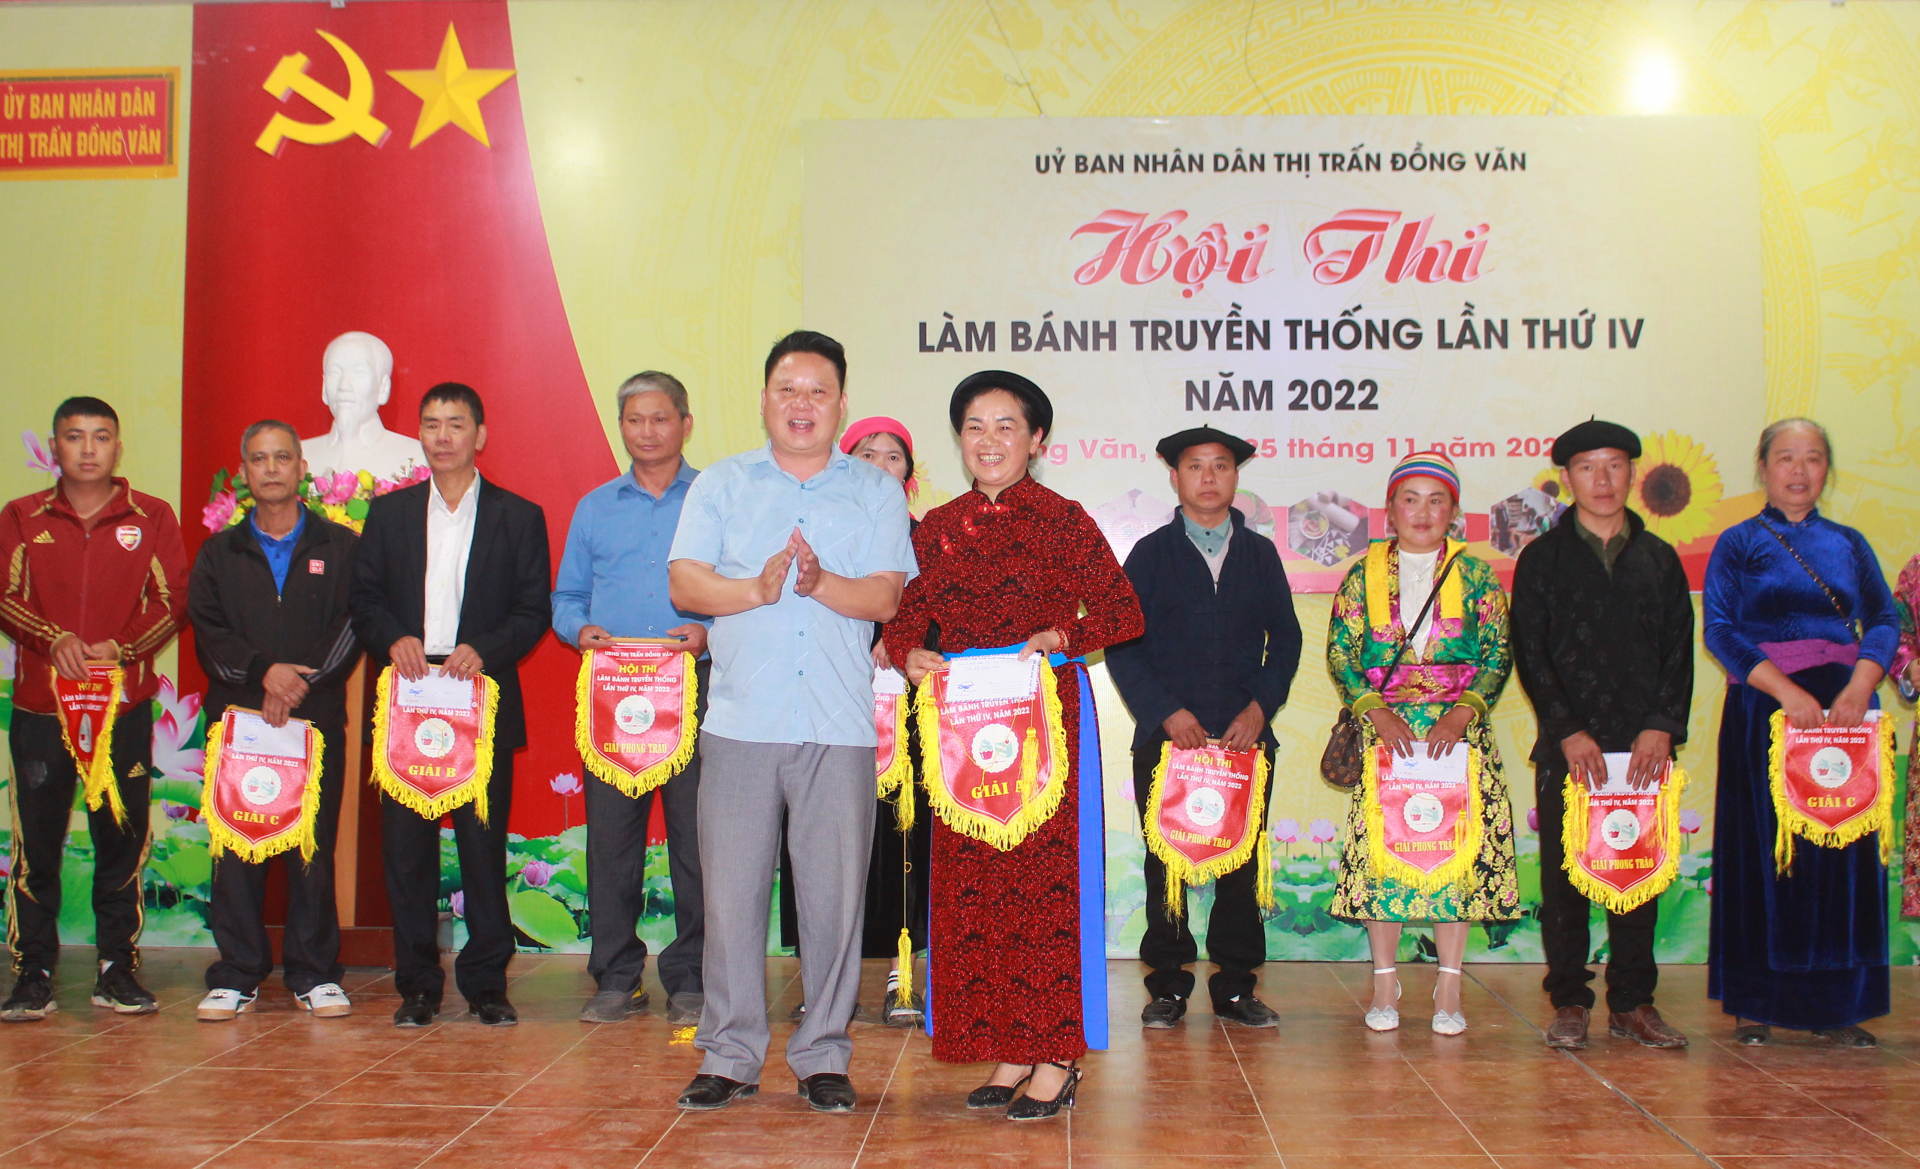 Lãnh đạo thị trấn Đồng Văn trao giải Nhất cho đội thi xuất sắc nhất